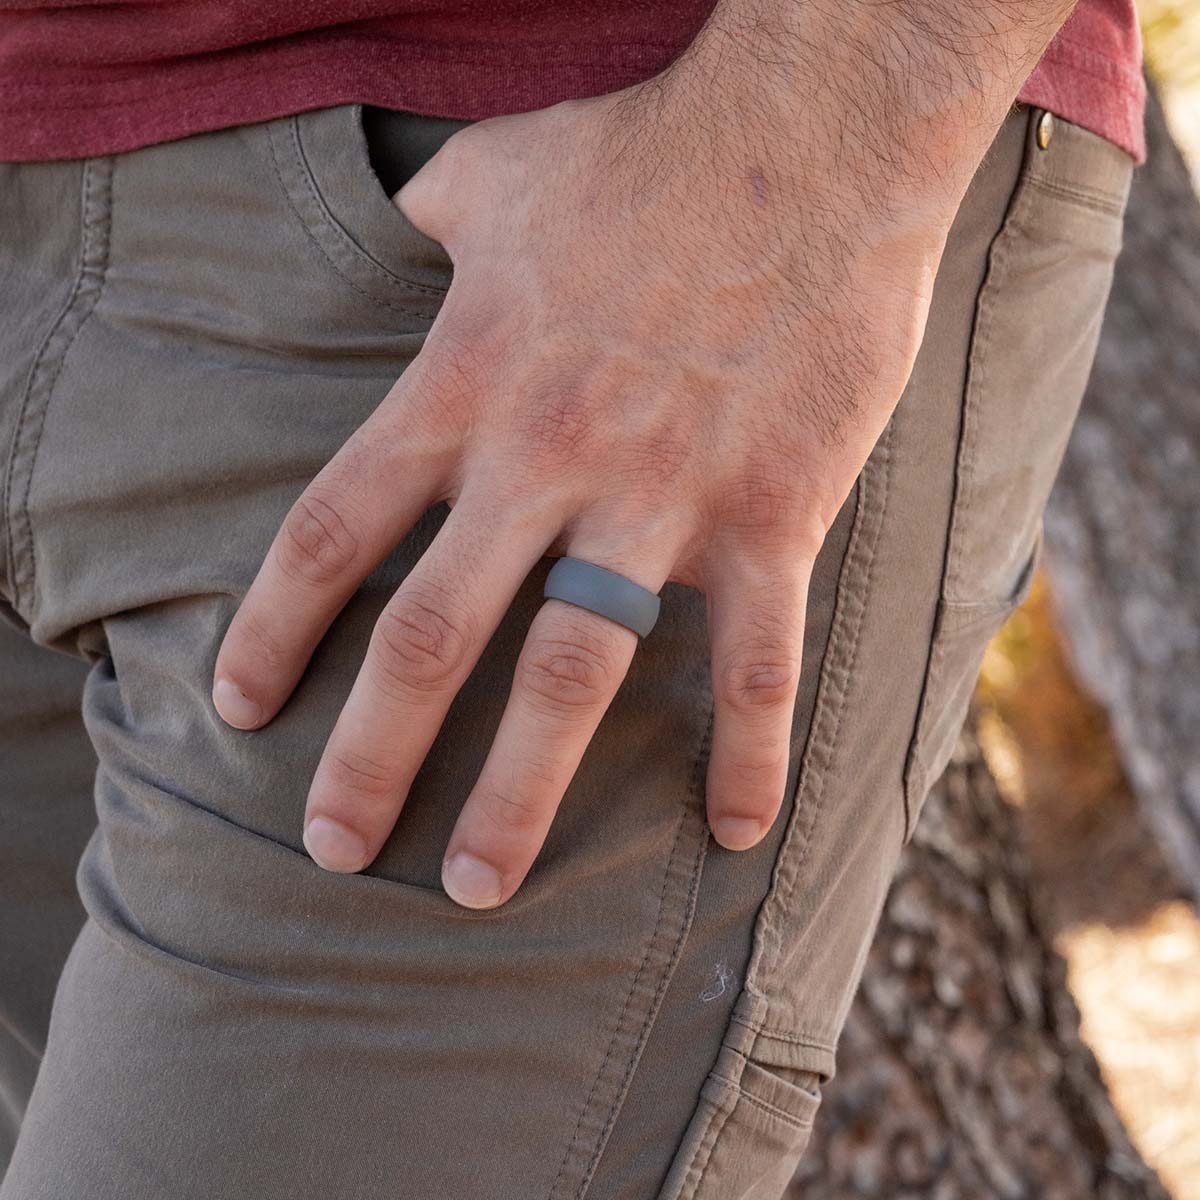 Man wearing a versatile gray silicone wedding ring